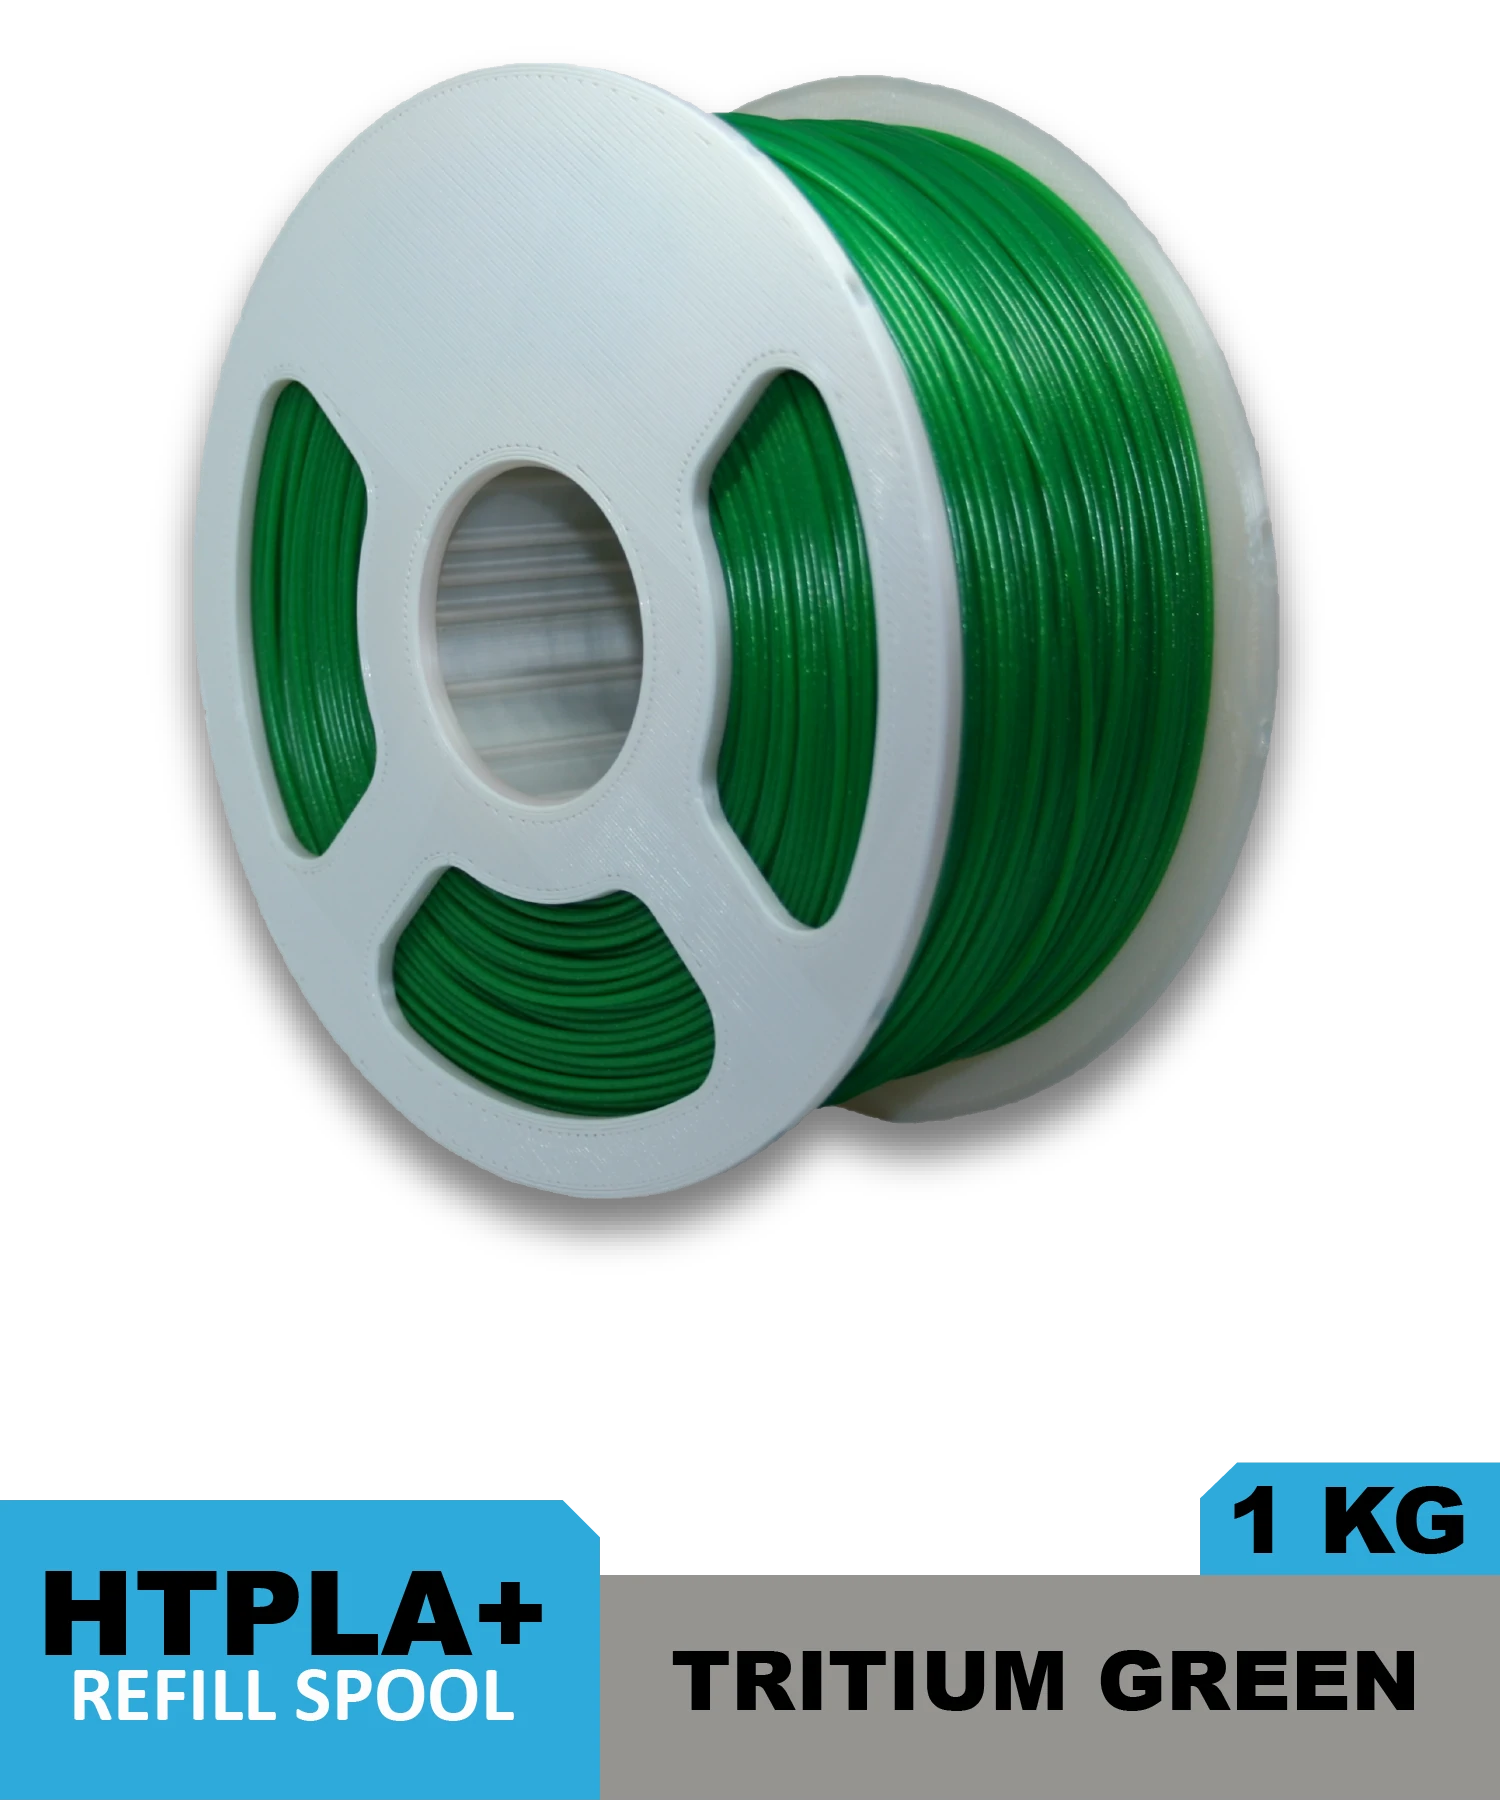 HTPLA - Tritium Green